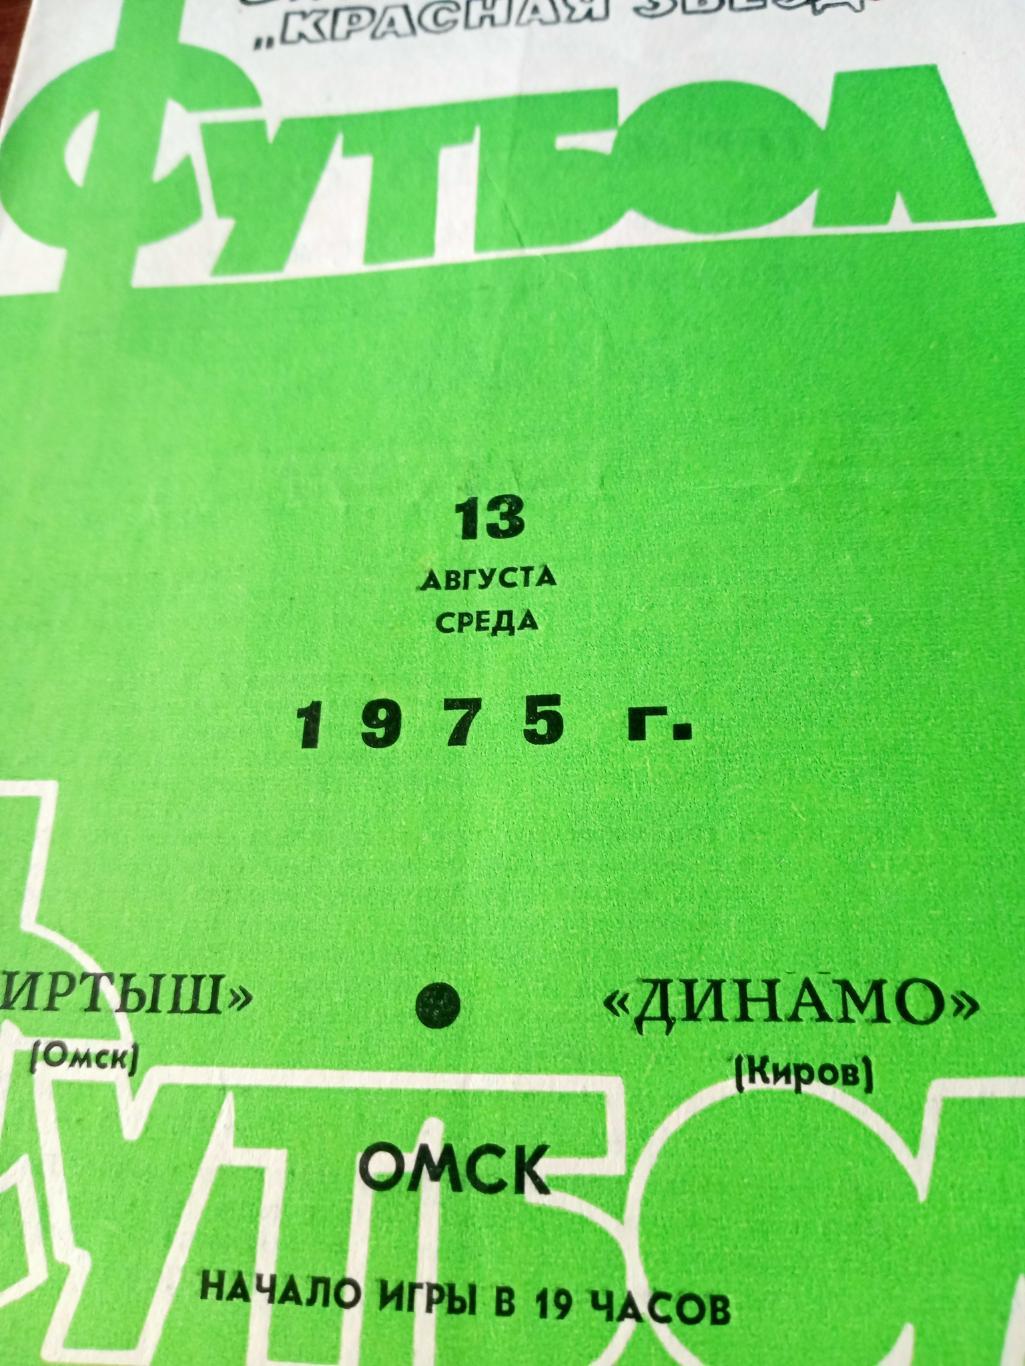 Иртыш Омск - Динамо Киров. 13 августа 1975 год